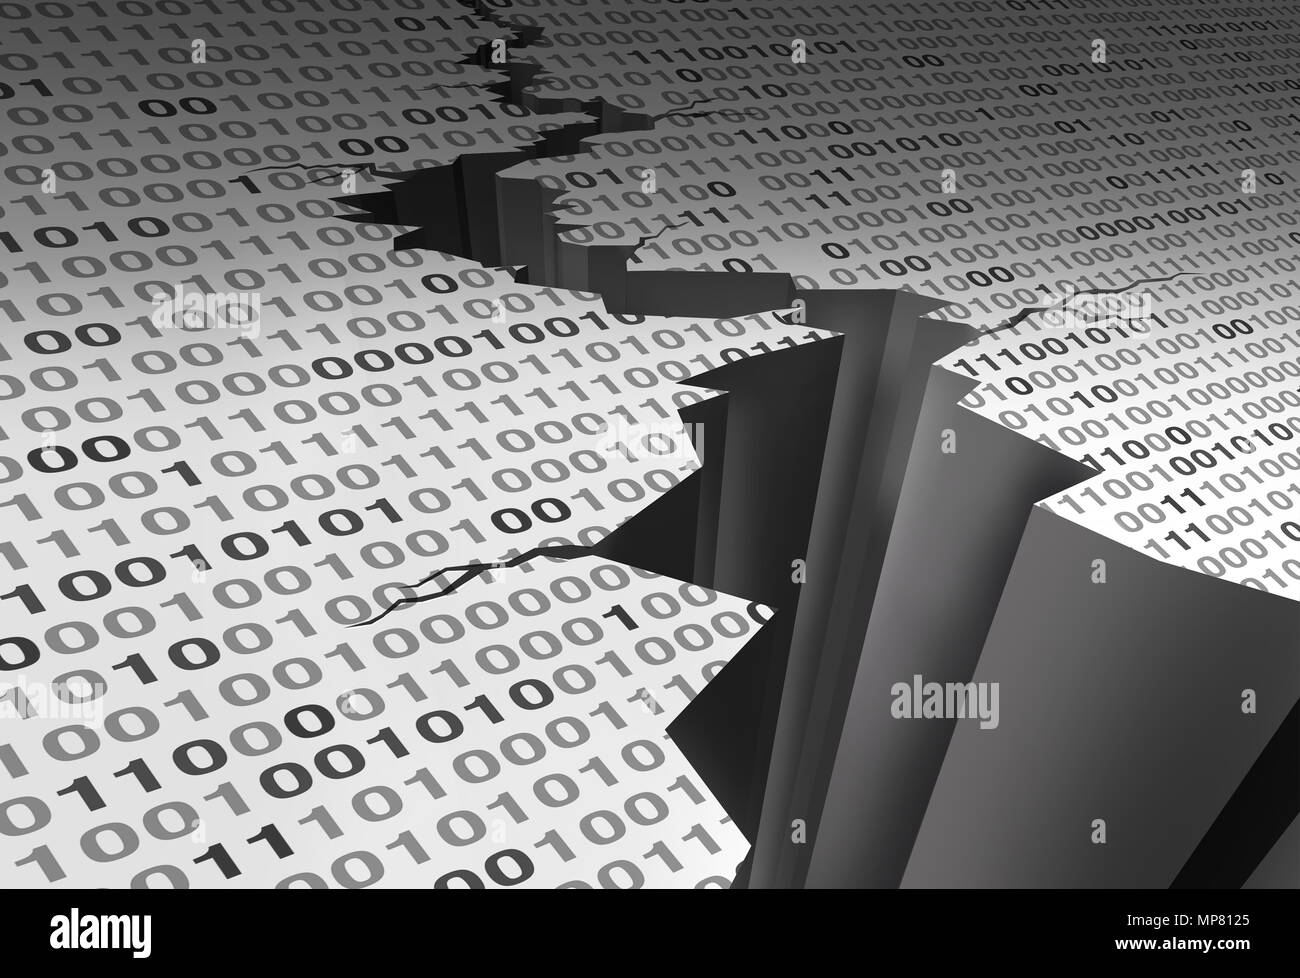 Daten knacken und Beschädigter Computer digital Software Code als 3D-Darstellung. Stockfoto